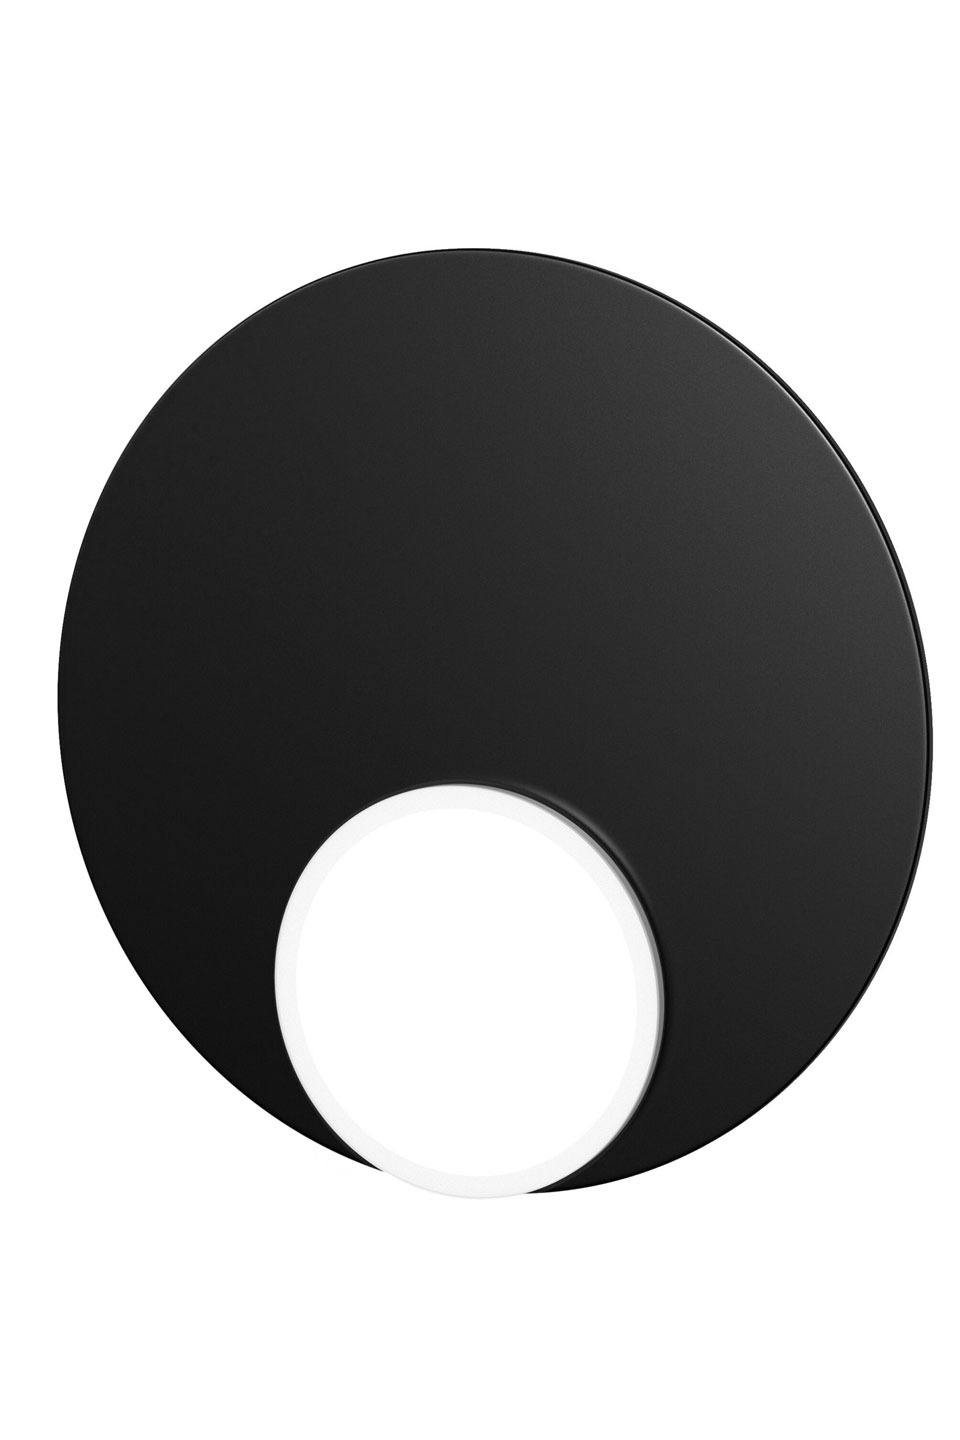 Dot05 applique disque minimaliste noire. TUNTO. 